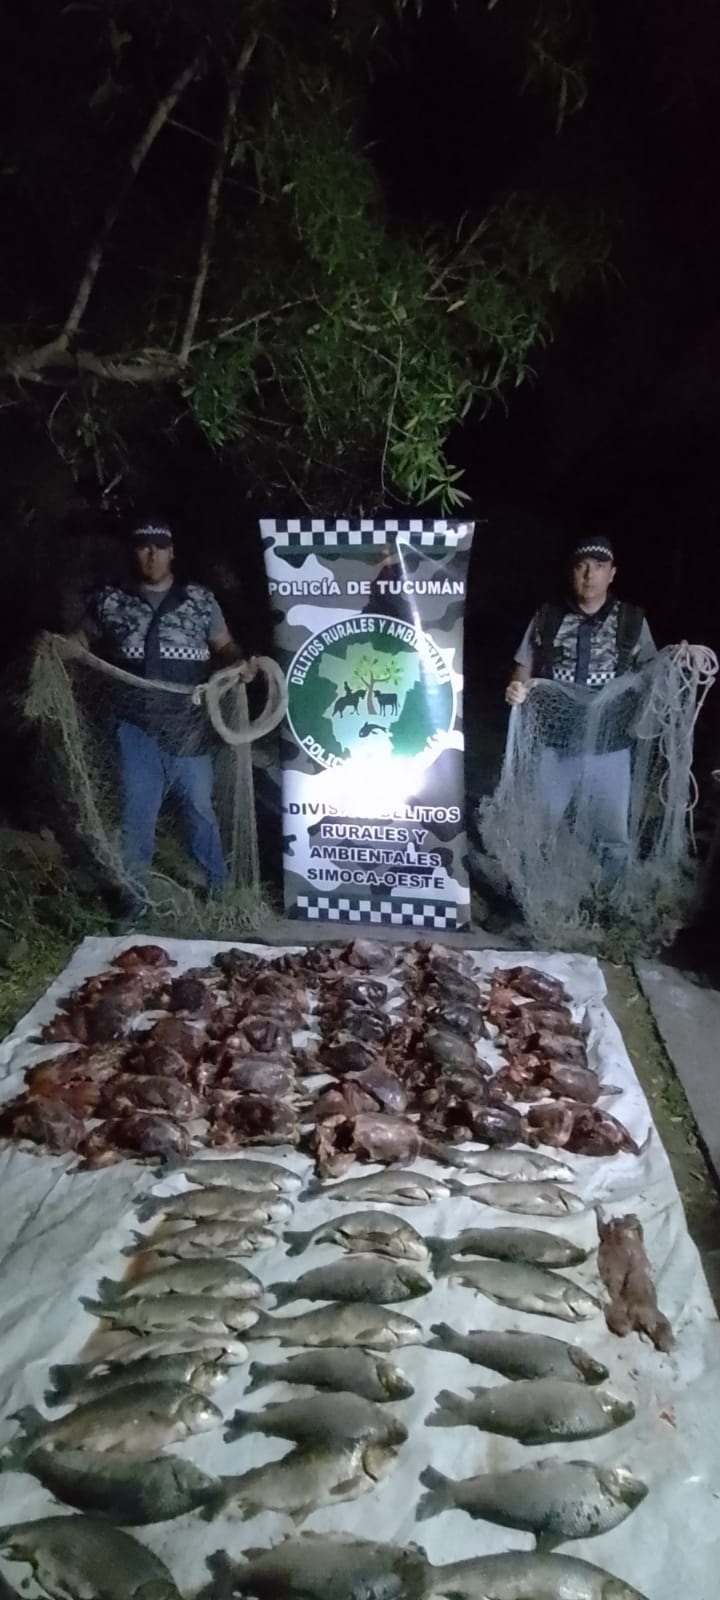 Los detalles del millonario negocio del tráfico ilegal de aves en Tucumán